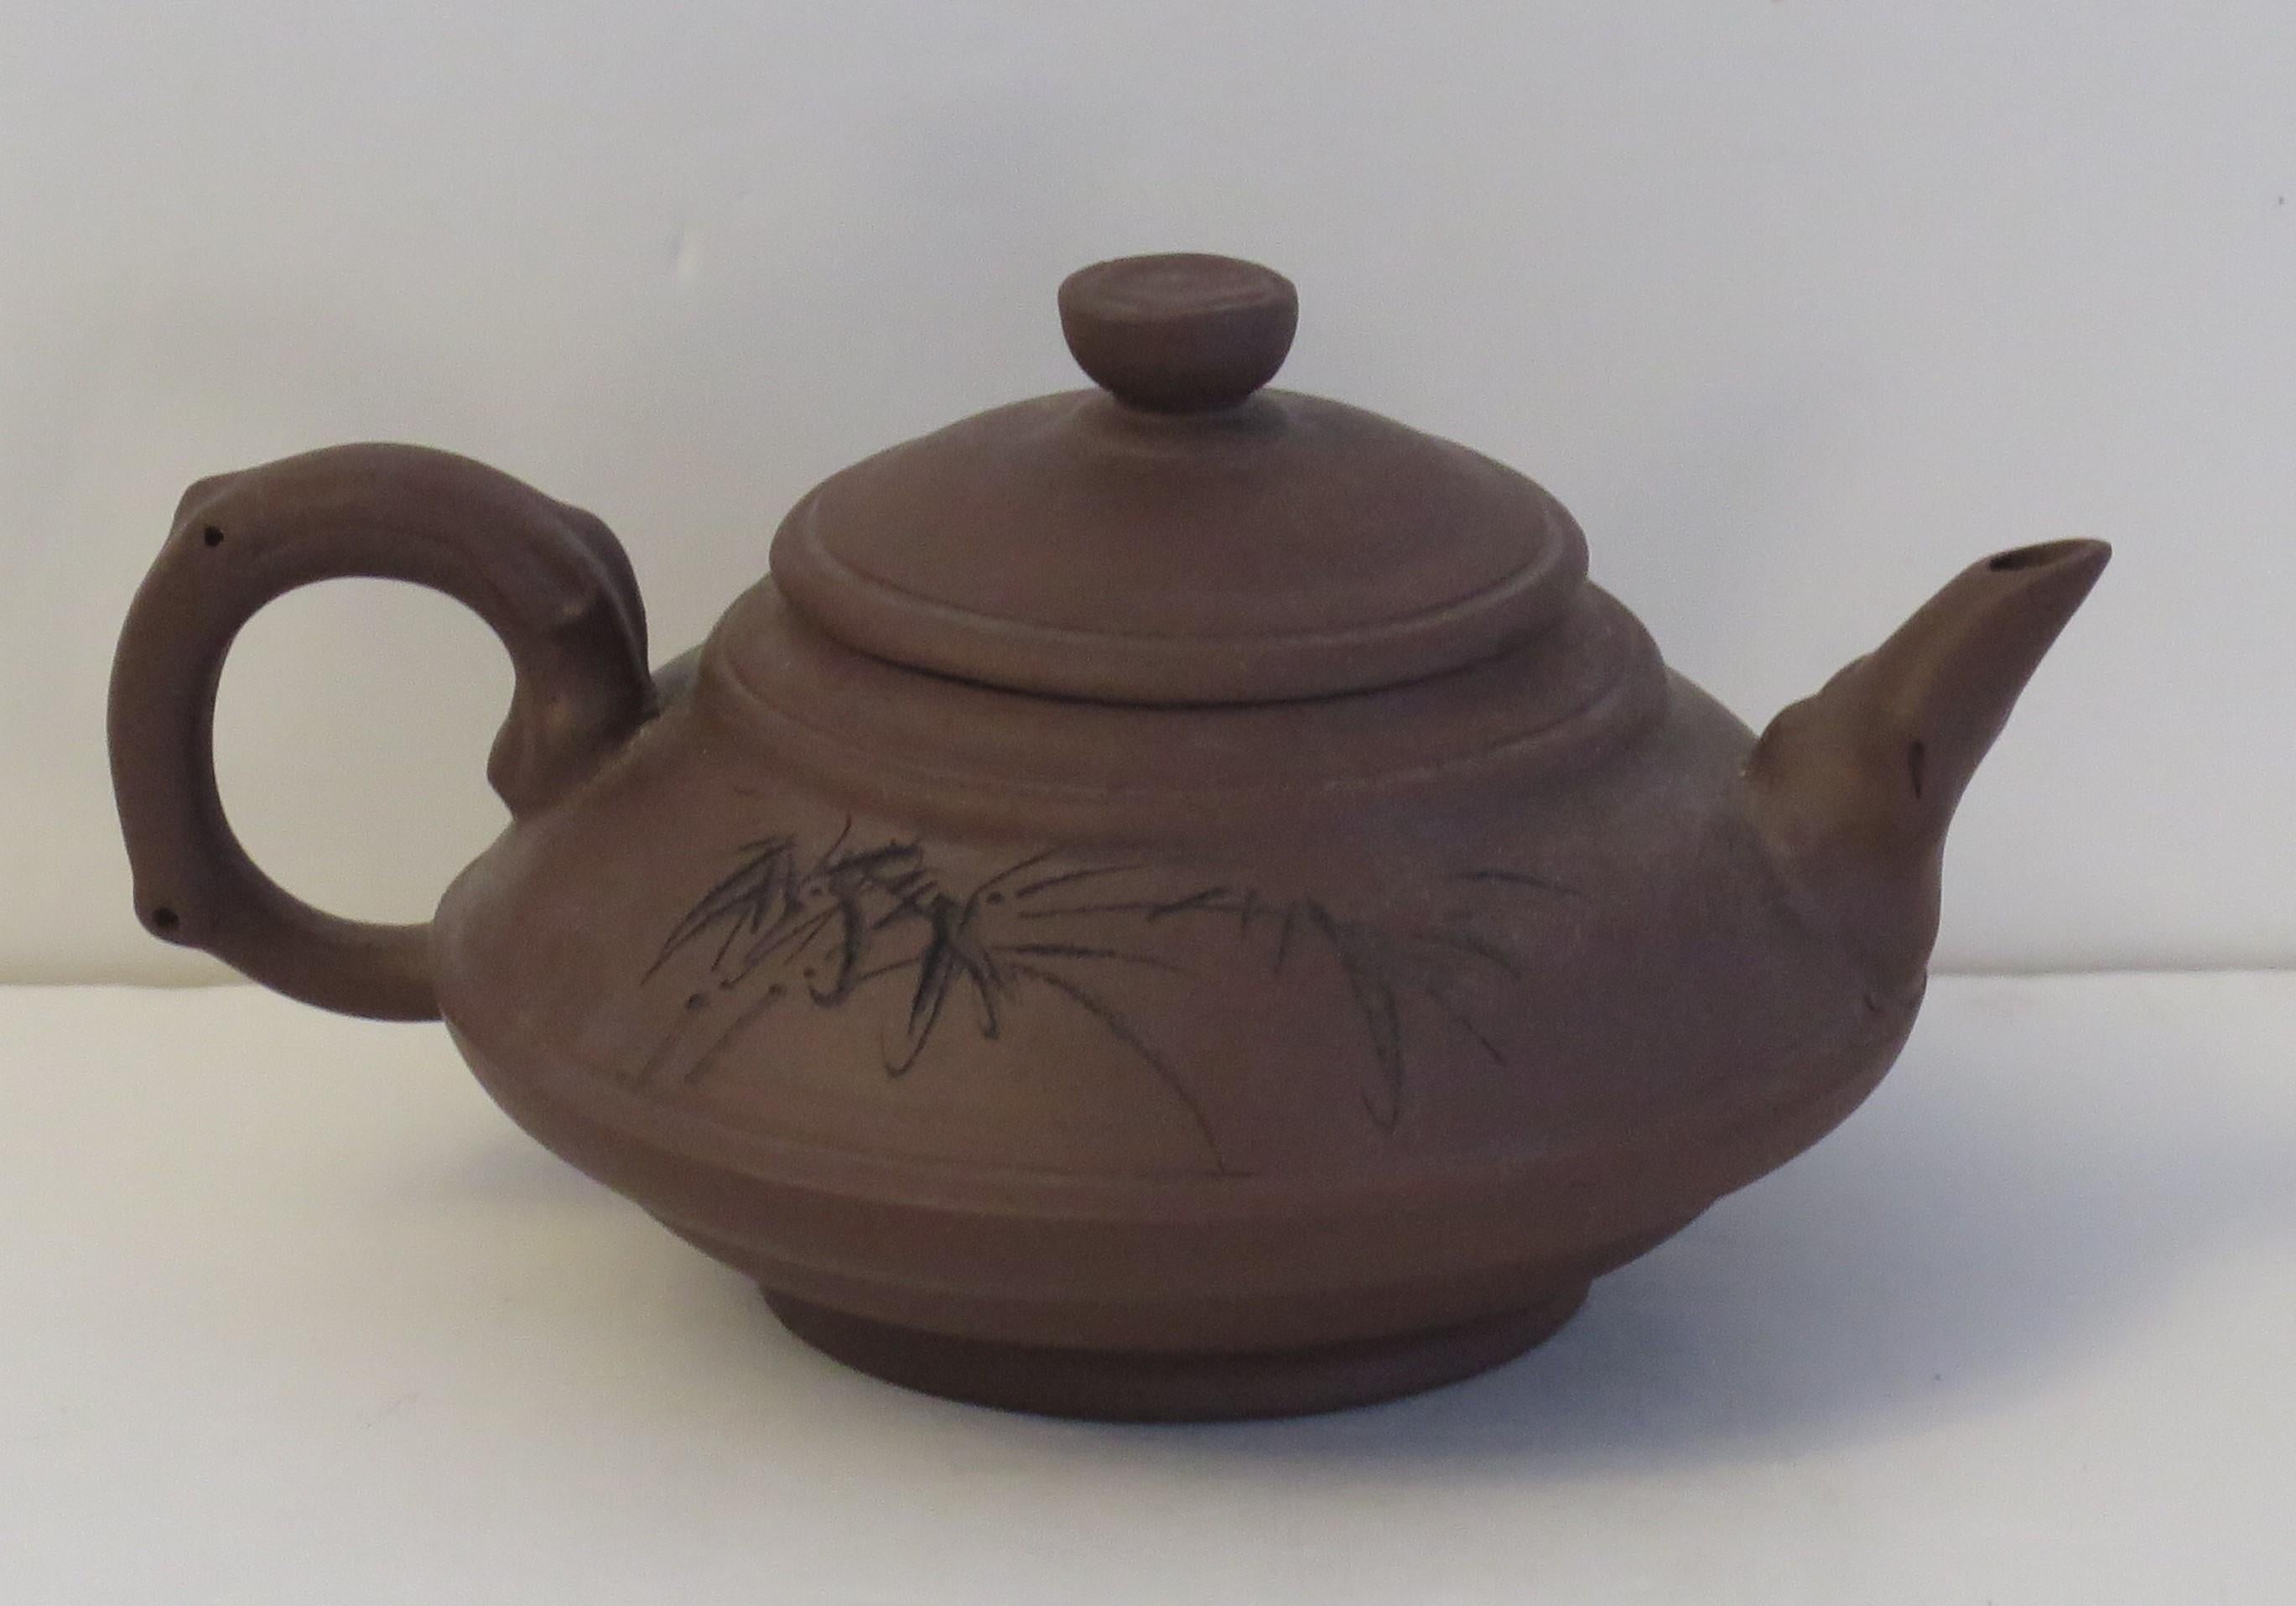 Dies ist eine chinesische handgefertigte Yixing-Teekanne aus rotem Ton mit Deckel, die wir auf das 20. Jahrhundert, etwa 1930, datieren.

Die Teekanne und der Deckel sind in interessanter Form handgefertigt und bestehen aus Red Clay-Steinzeug. Die